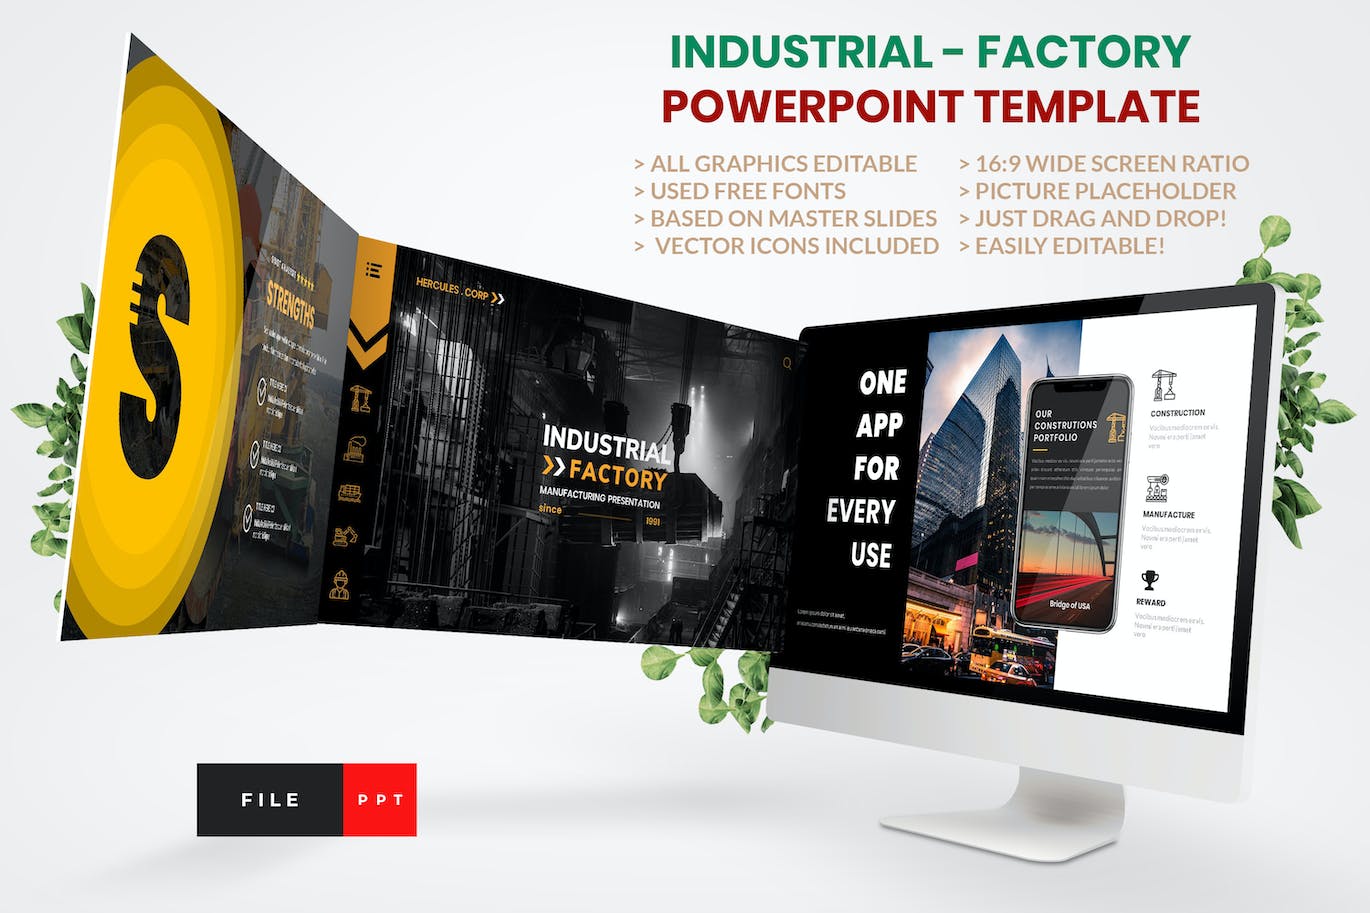 工业工厂Powerpoint模板下载 Industrial – Factory PowerPoint Template 幻灯图表 第1张